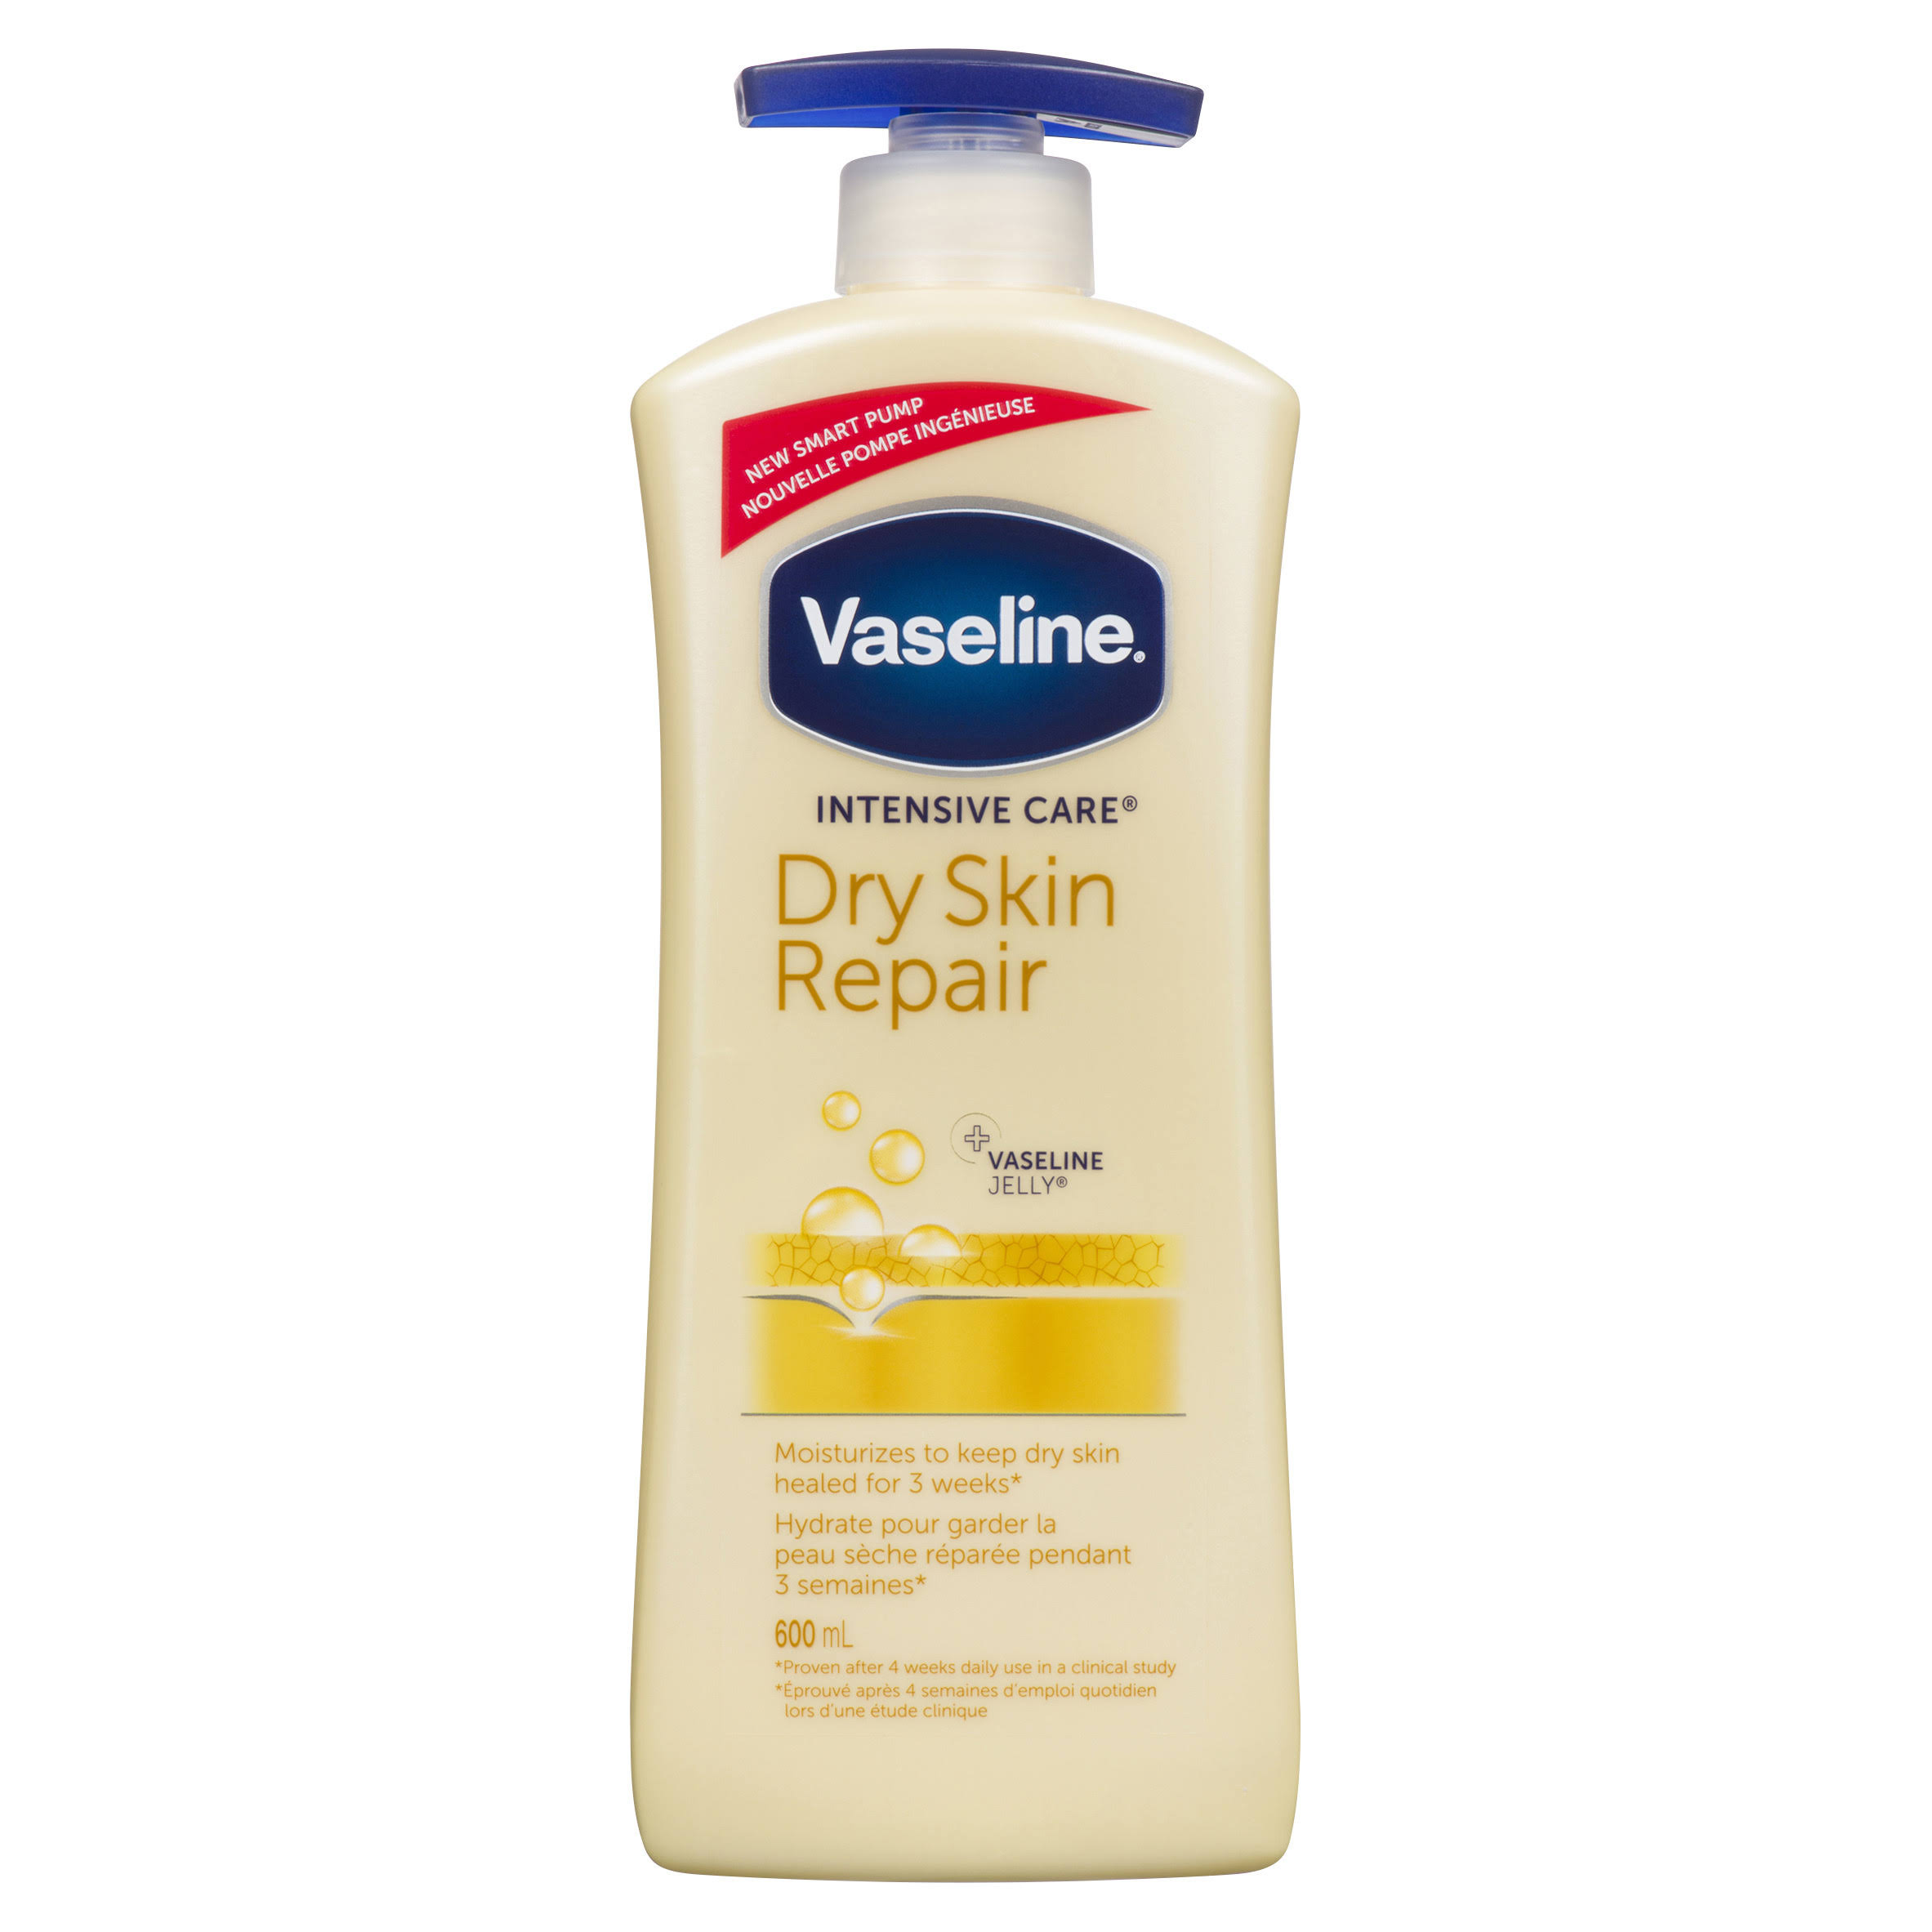 Vaseline Intensive Care Dry Skin Repair Lotion - 600ml